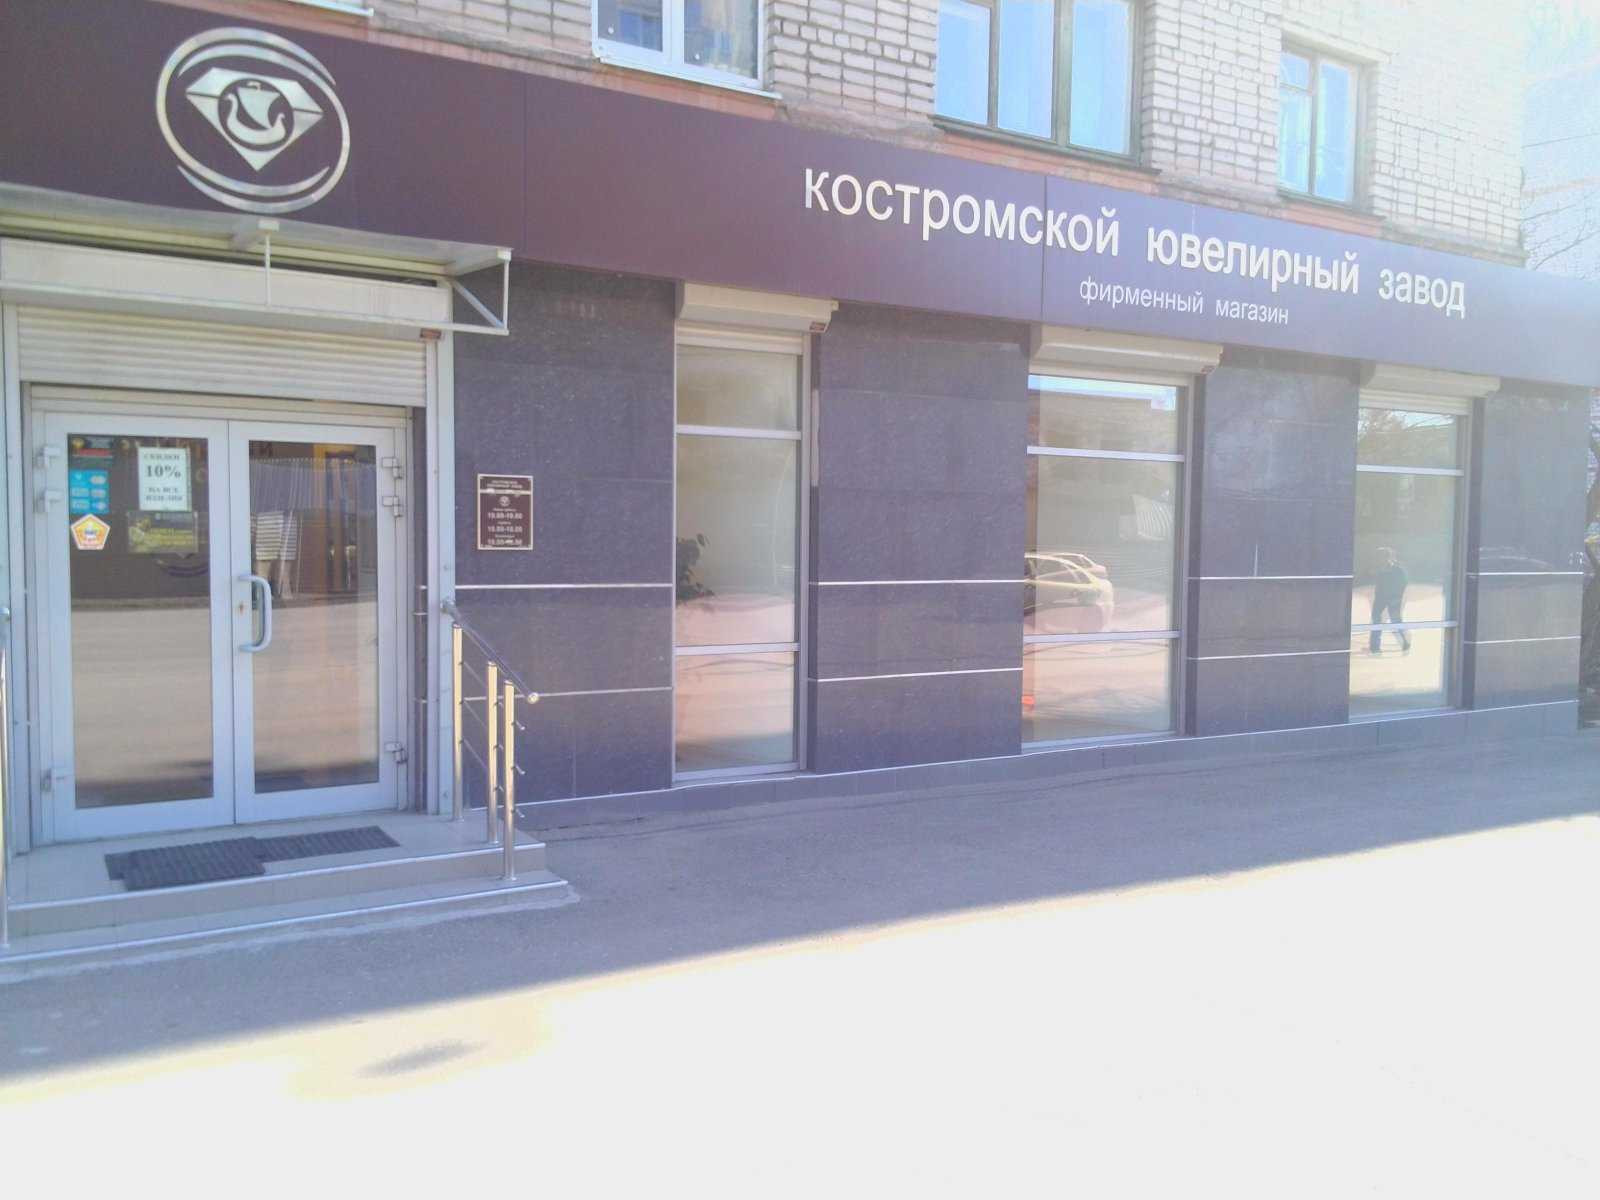 фирменный магазин Костромской ювелирный завод фото 1